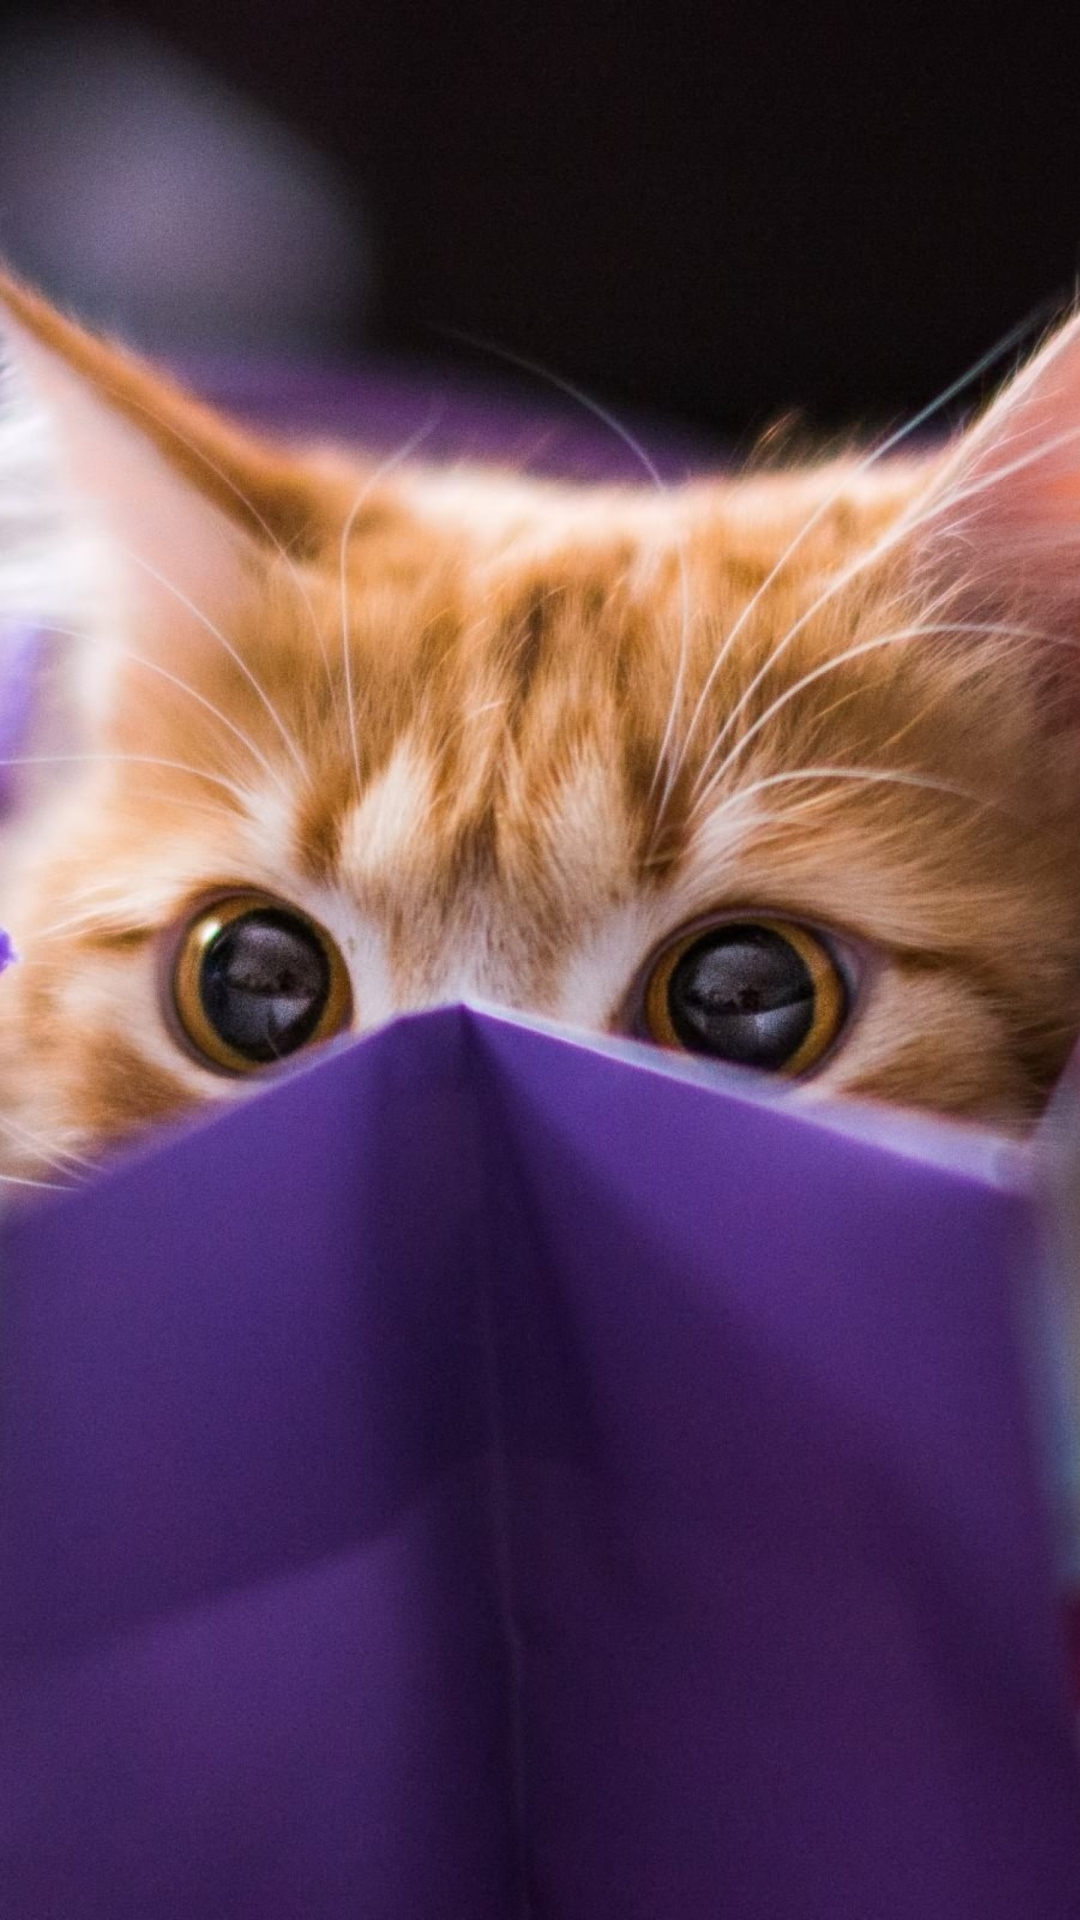 Ginger Cat Hiding In Gift Bag wallpaper 1080x1920